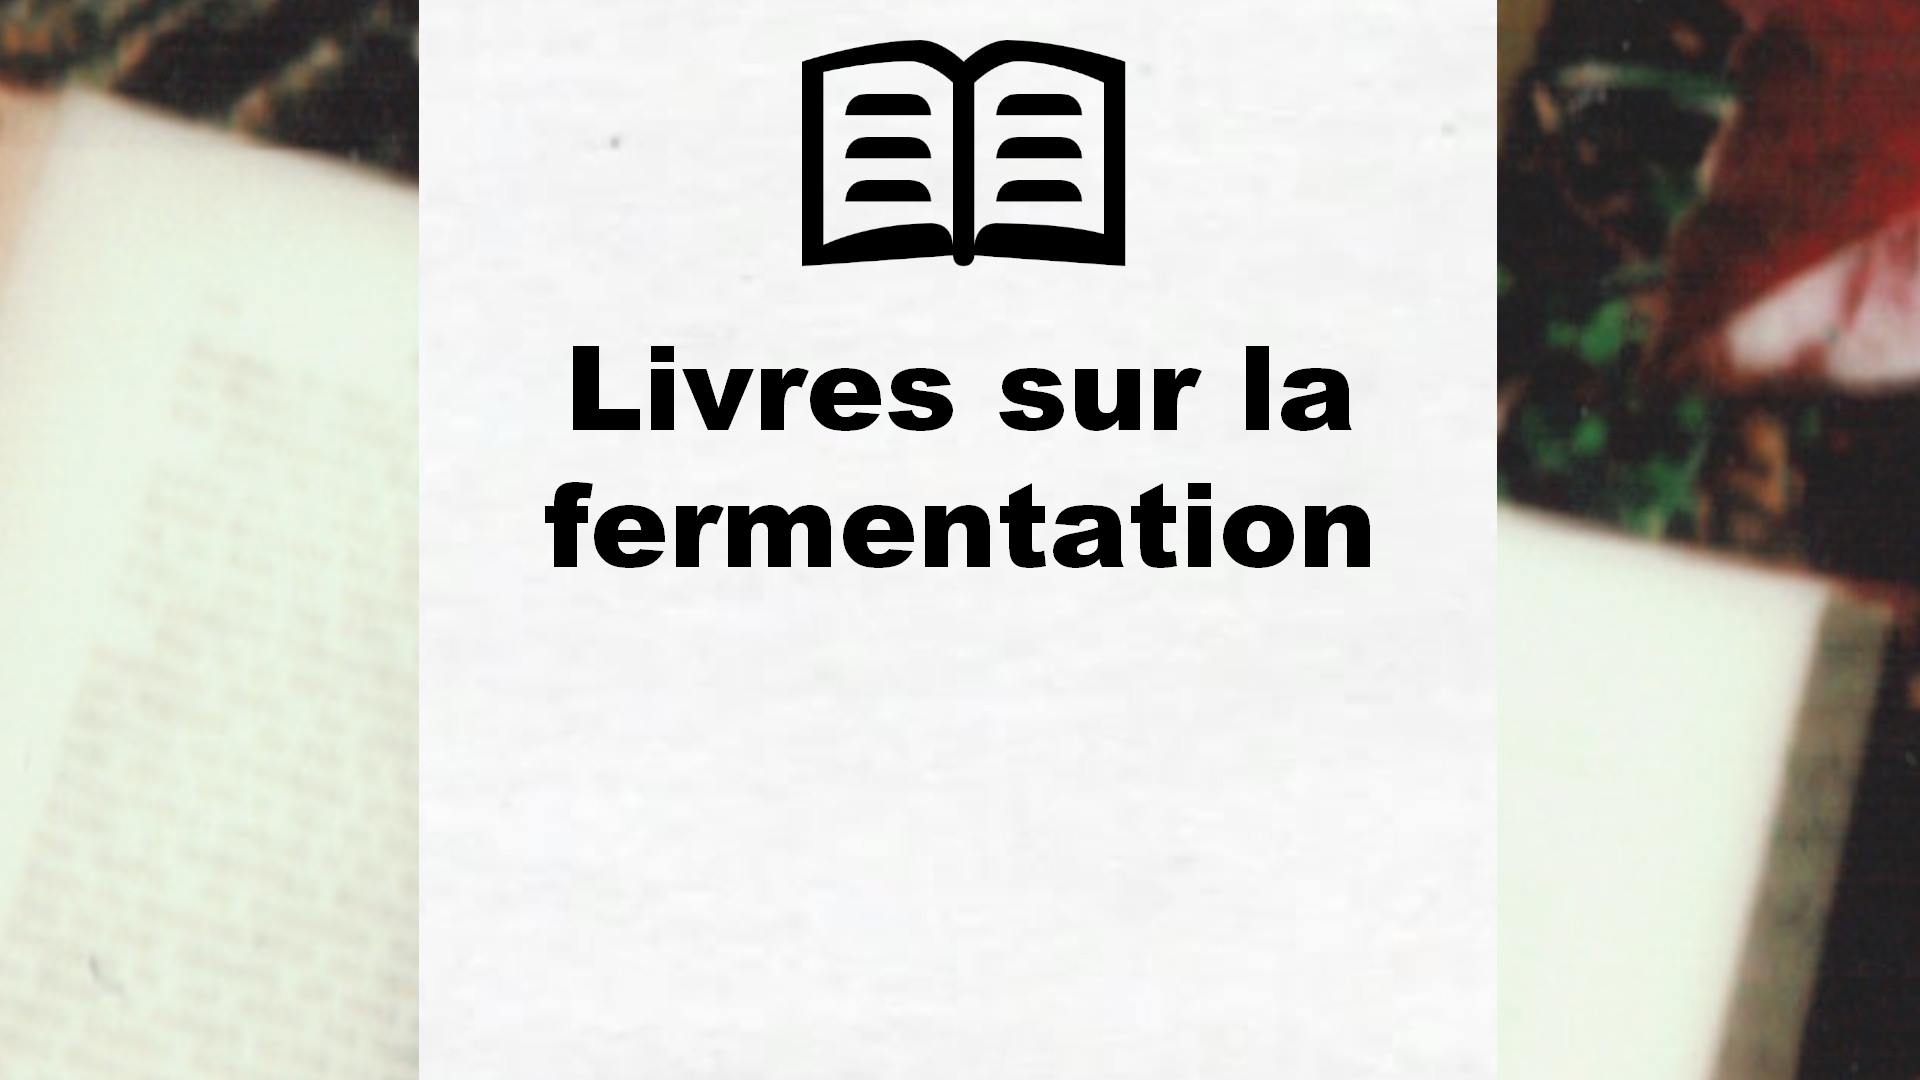 Livres sur la fermentation